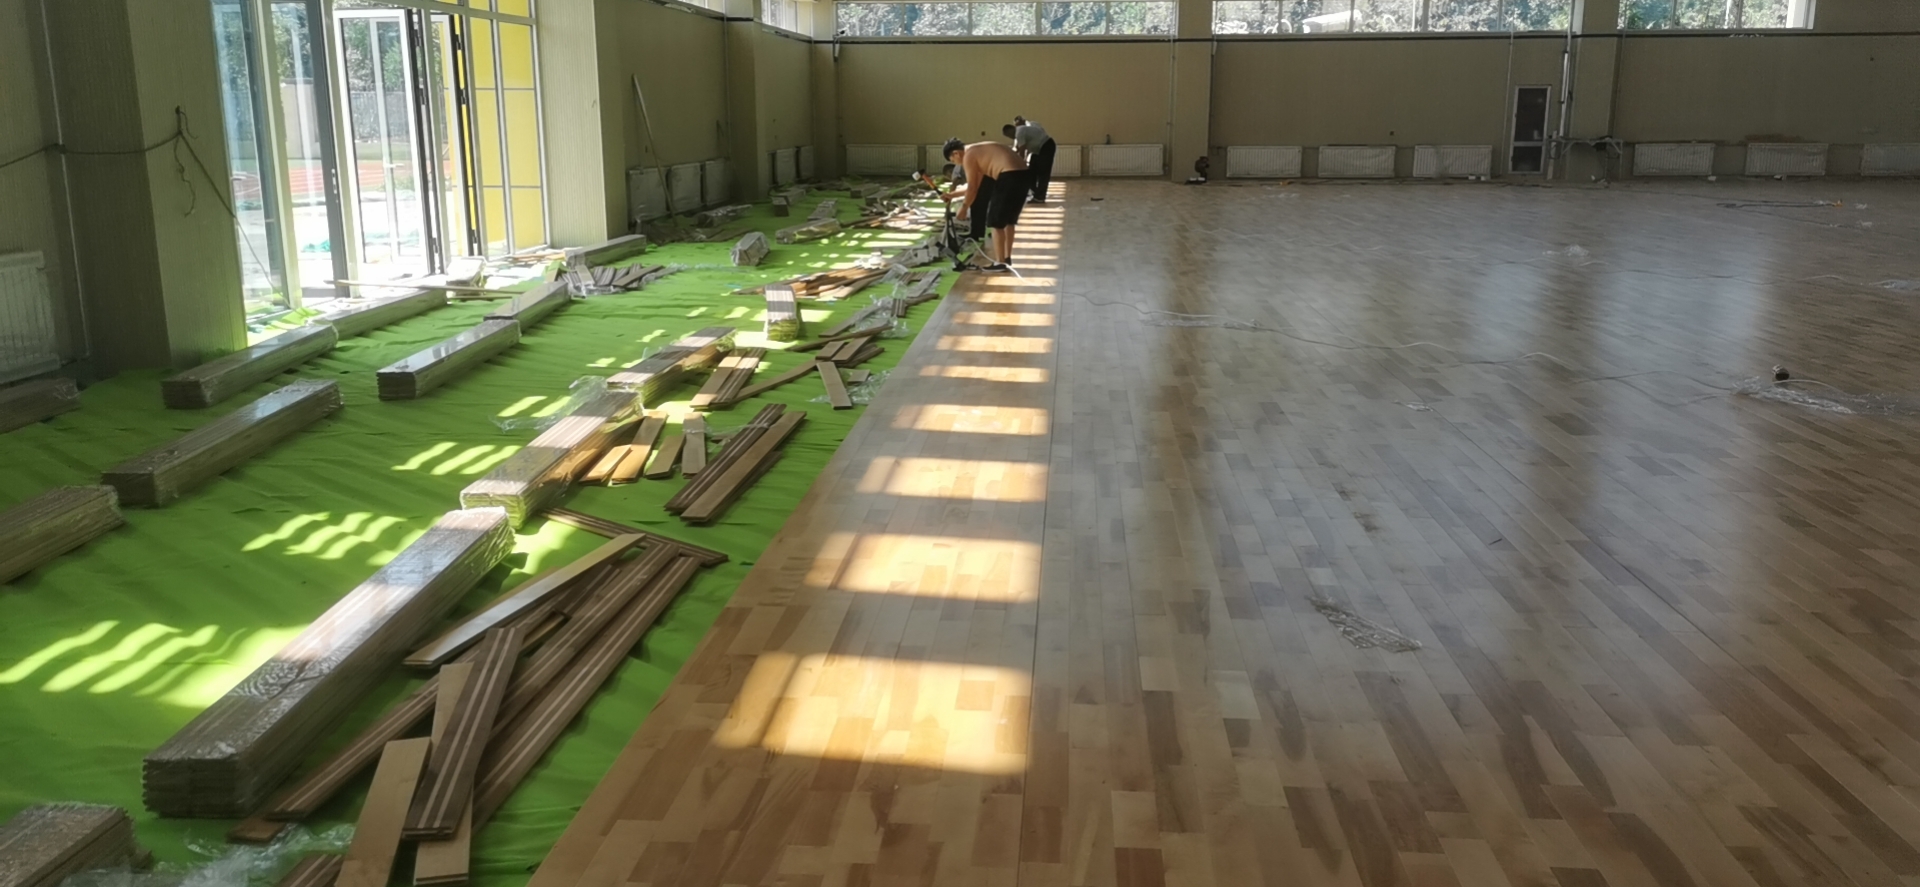 单龙骨结构 枫桦木A级 篮球馆木地板 启禾体育 厂家销售 体育木地板1